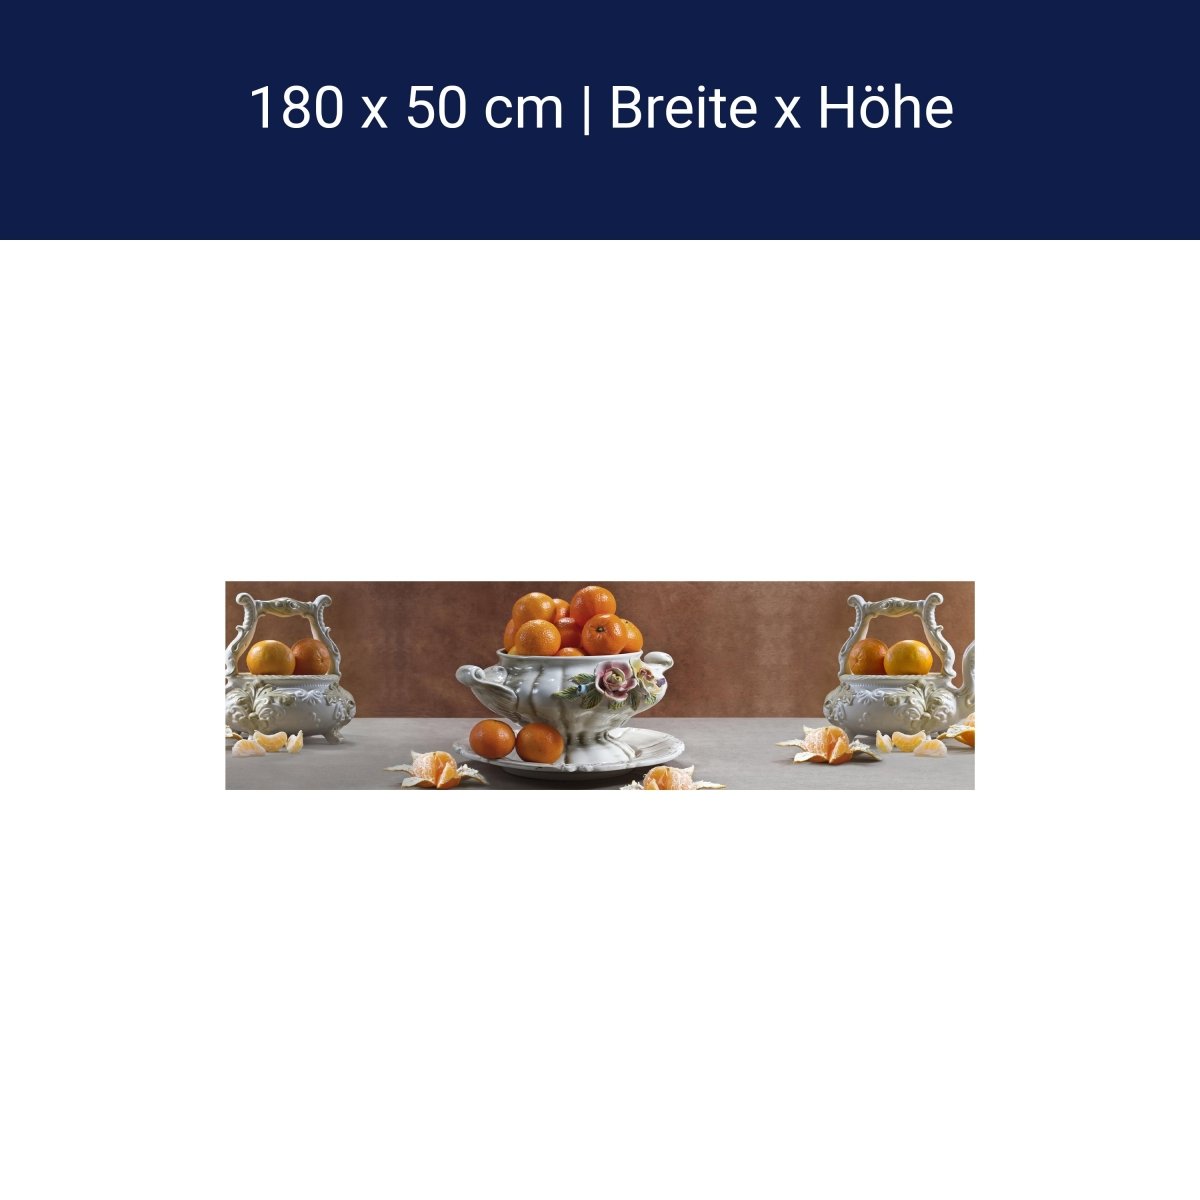 Kitchen splashback tangerine porcelain bowl fruit roses M1163